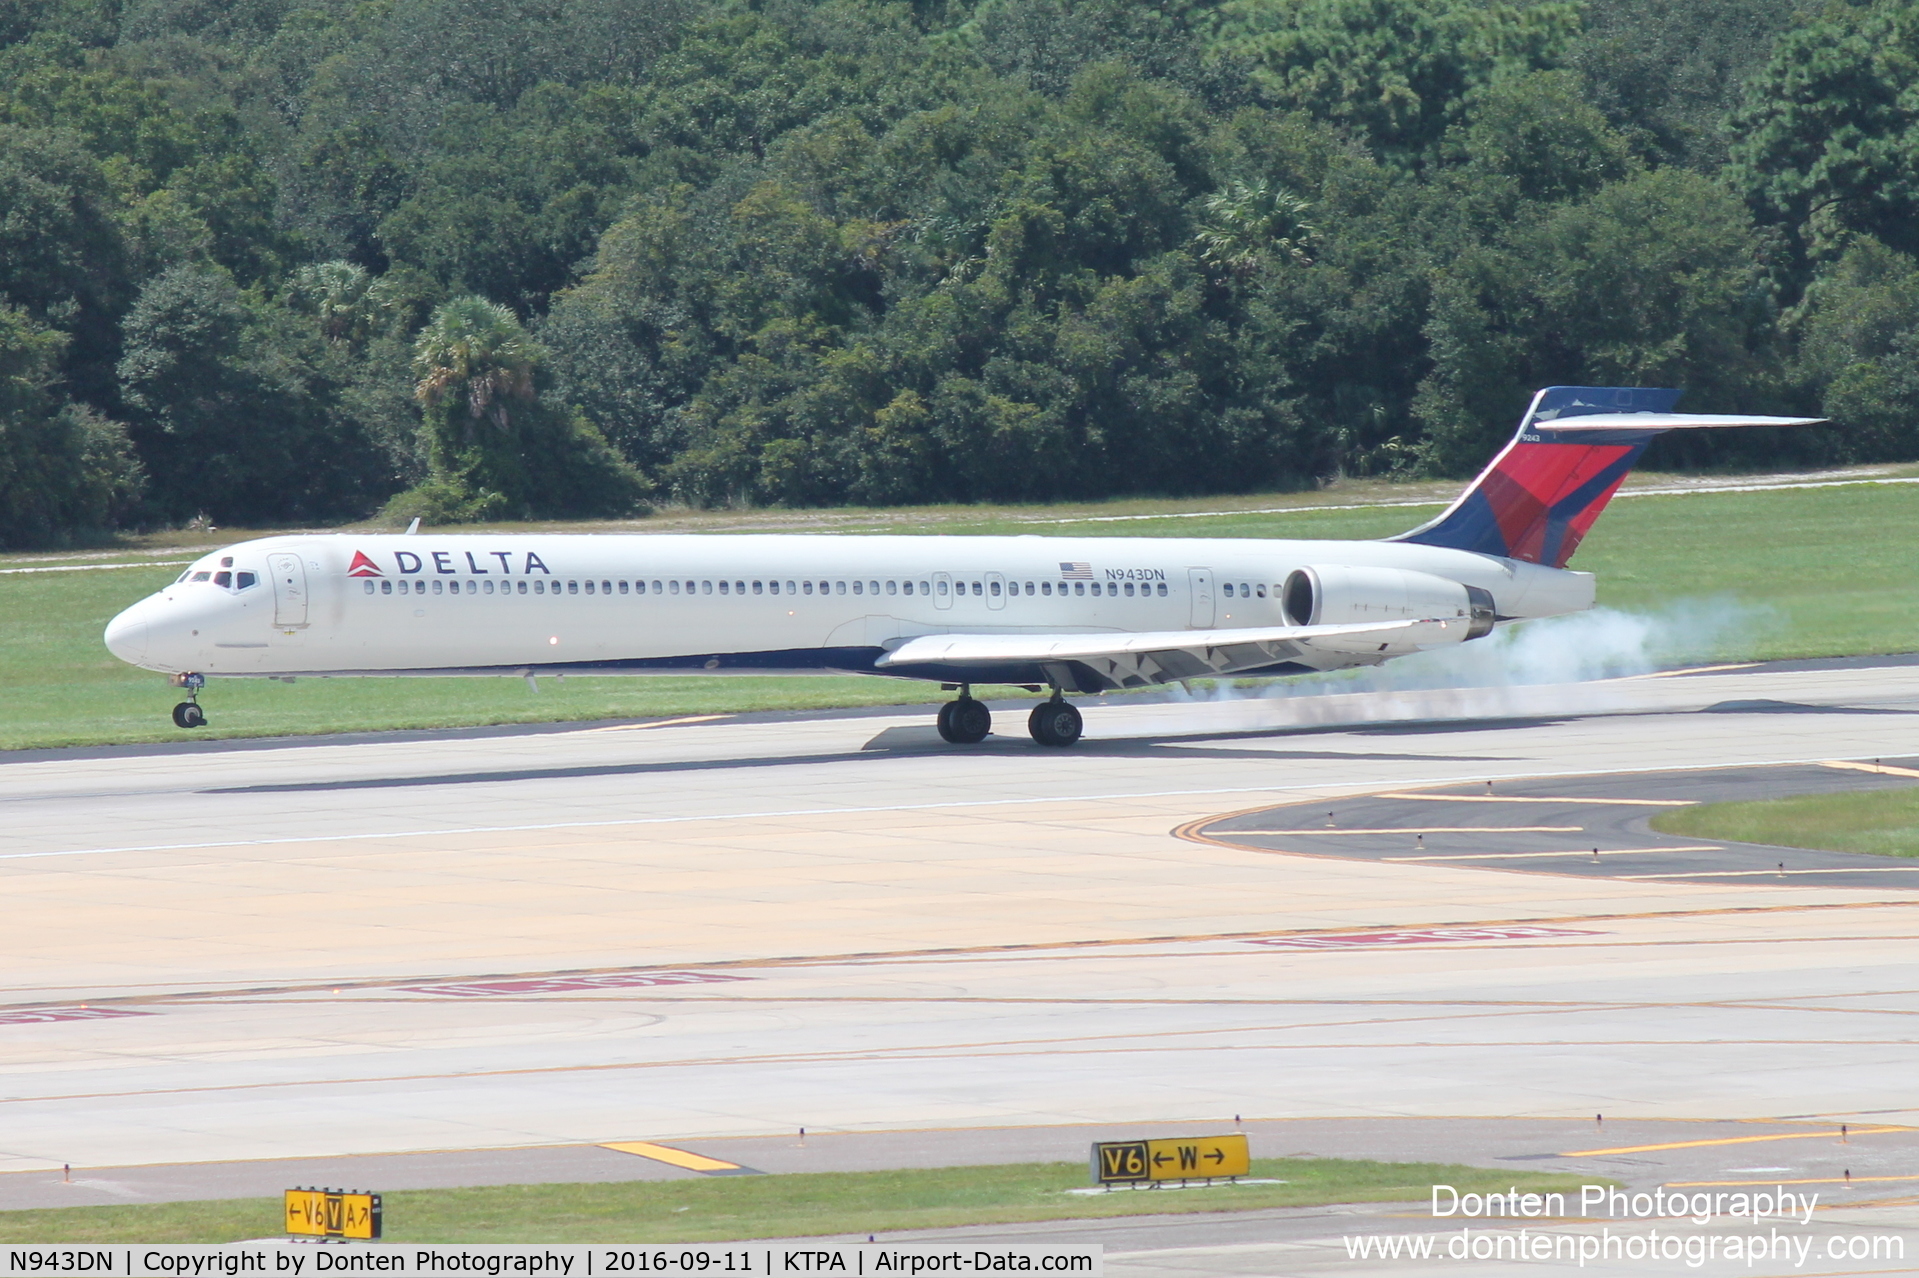 N943DN, 1997 McDonnell Douglas MD-90-30 C/N 53557, Delta Flight 2372 (N943DN) arrives at Tampa International Airport following flight from Hartsfield-Jackson Atlanta International Airport